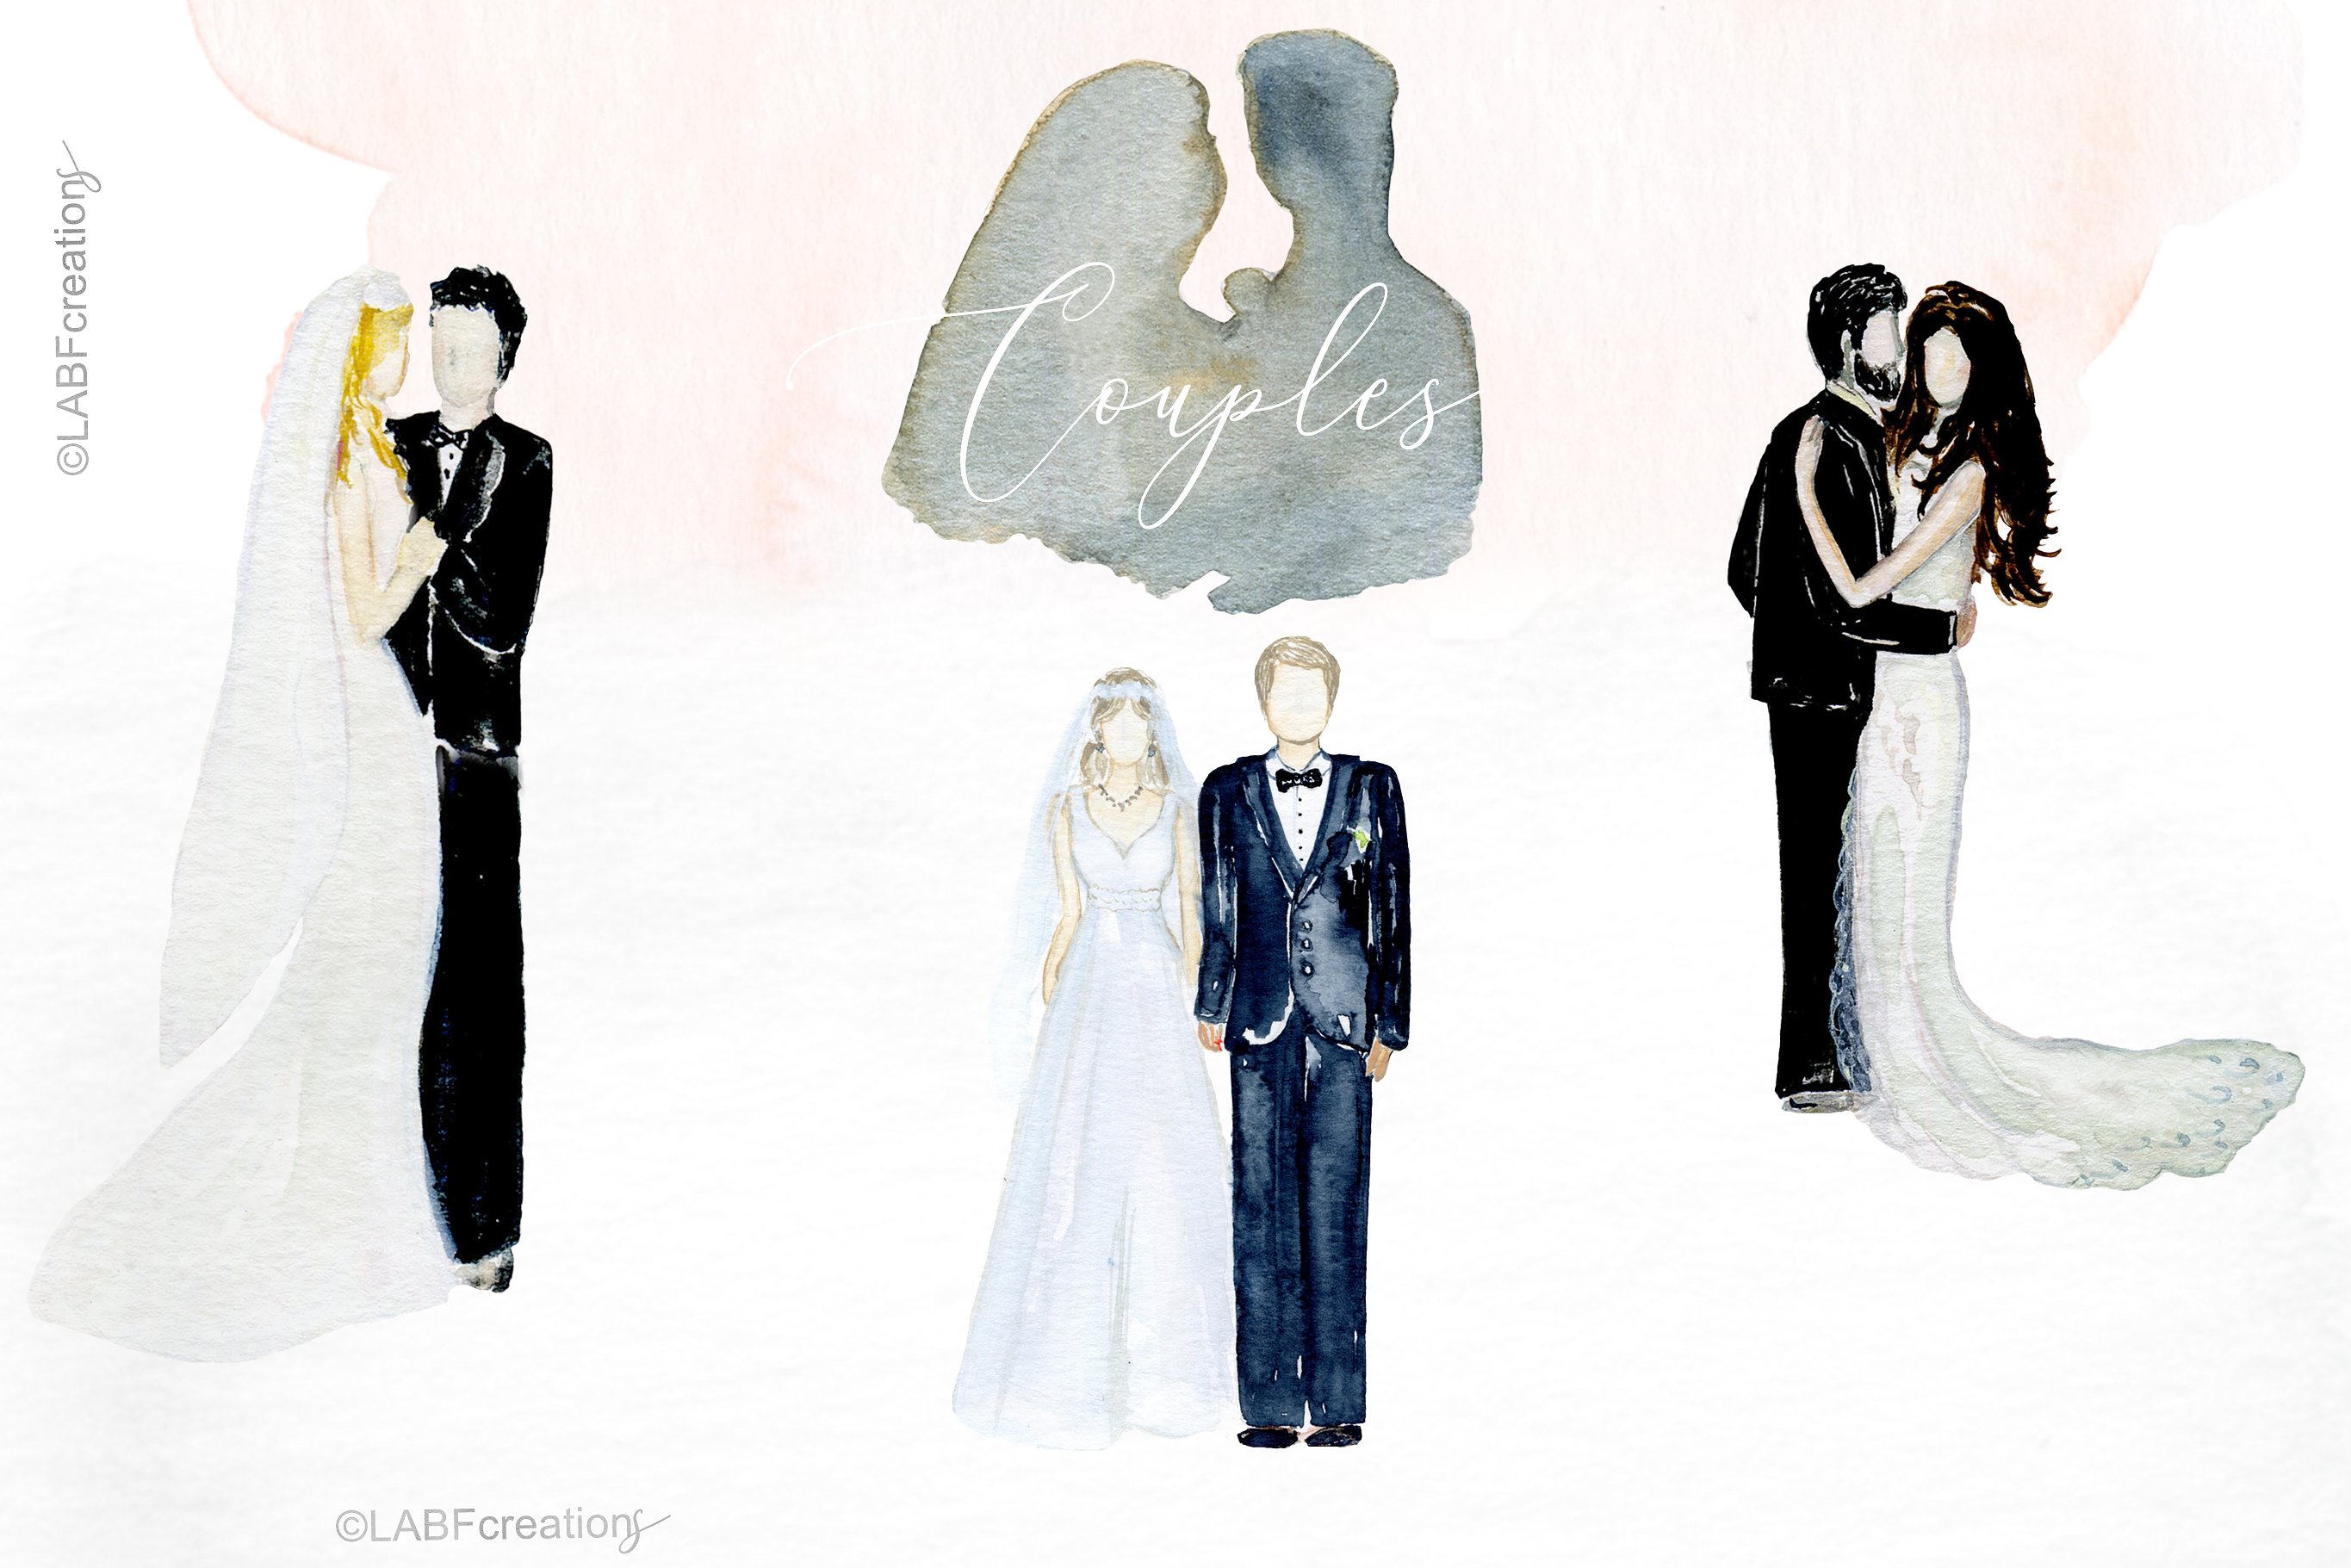 浪漫婚礼时间轴&故事设计素材 Wedding timeline & story creator插图9